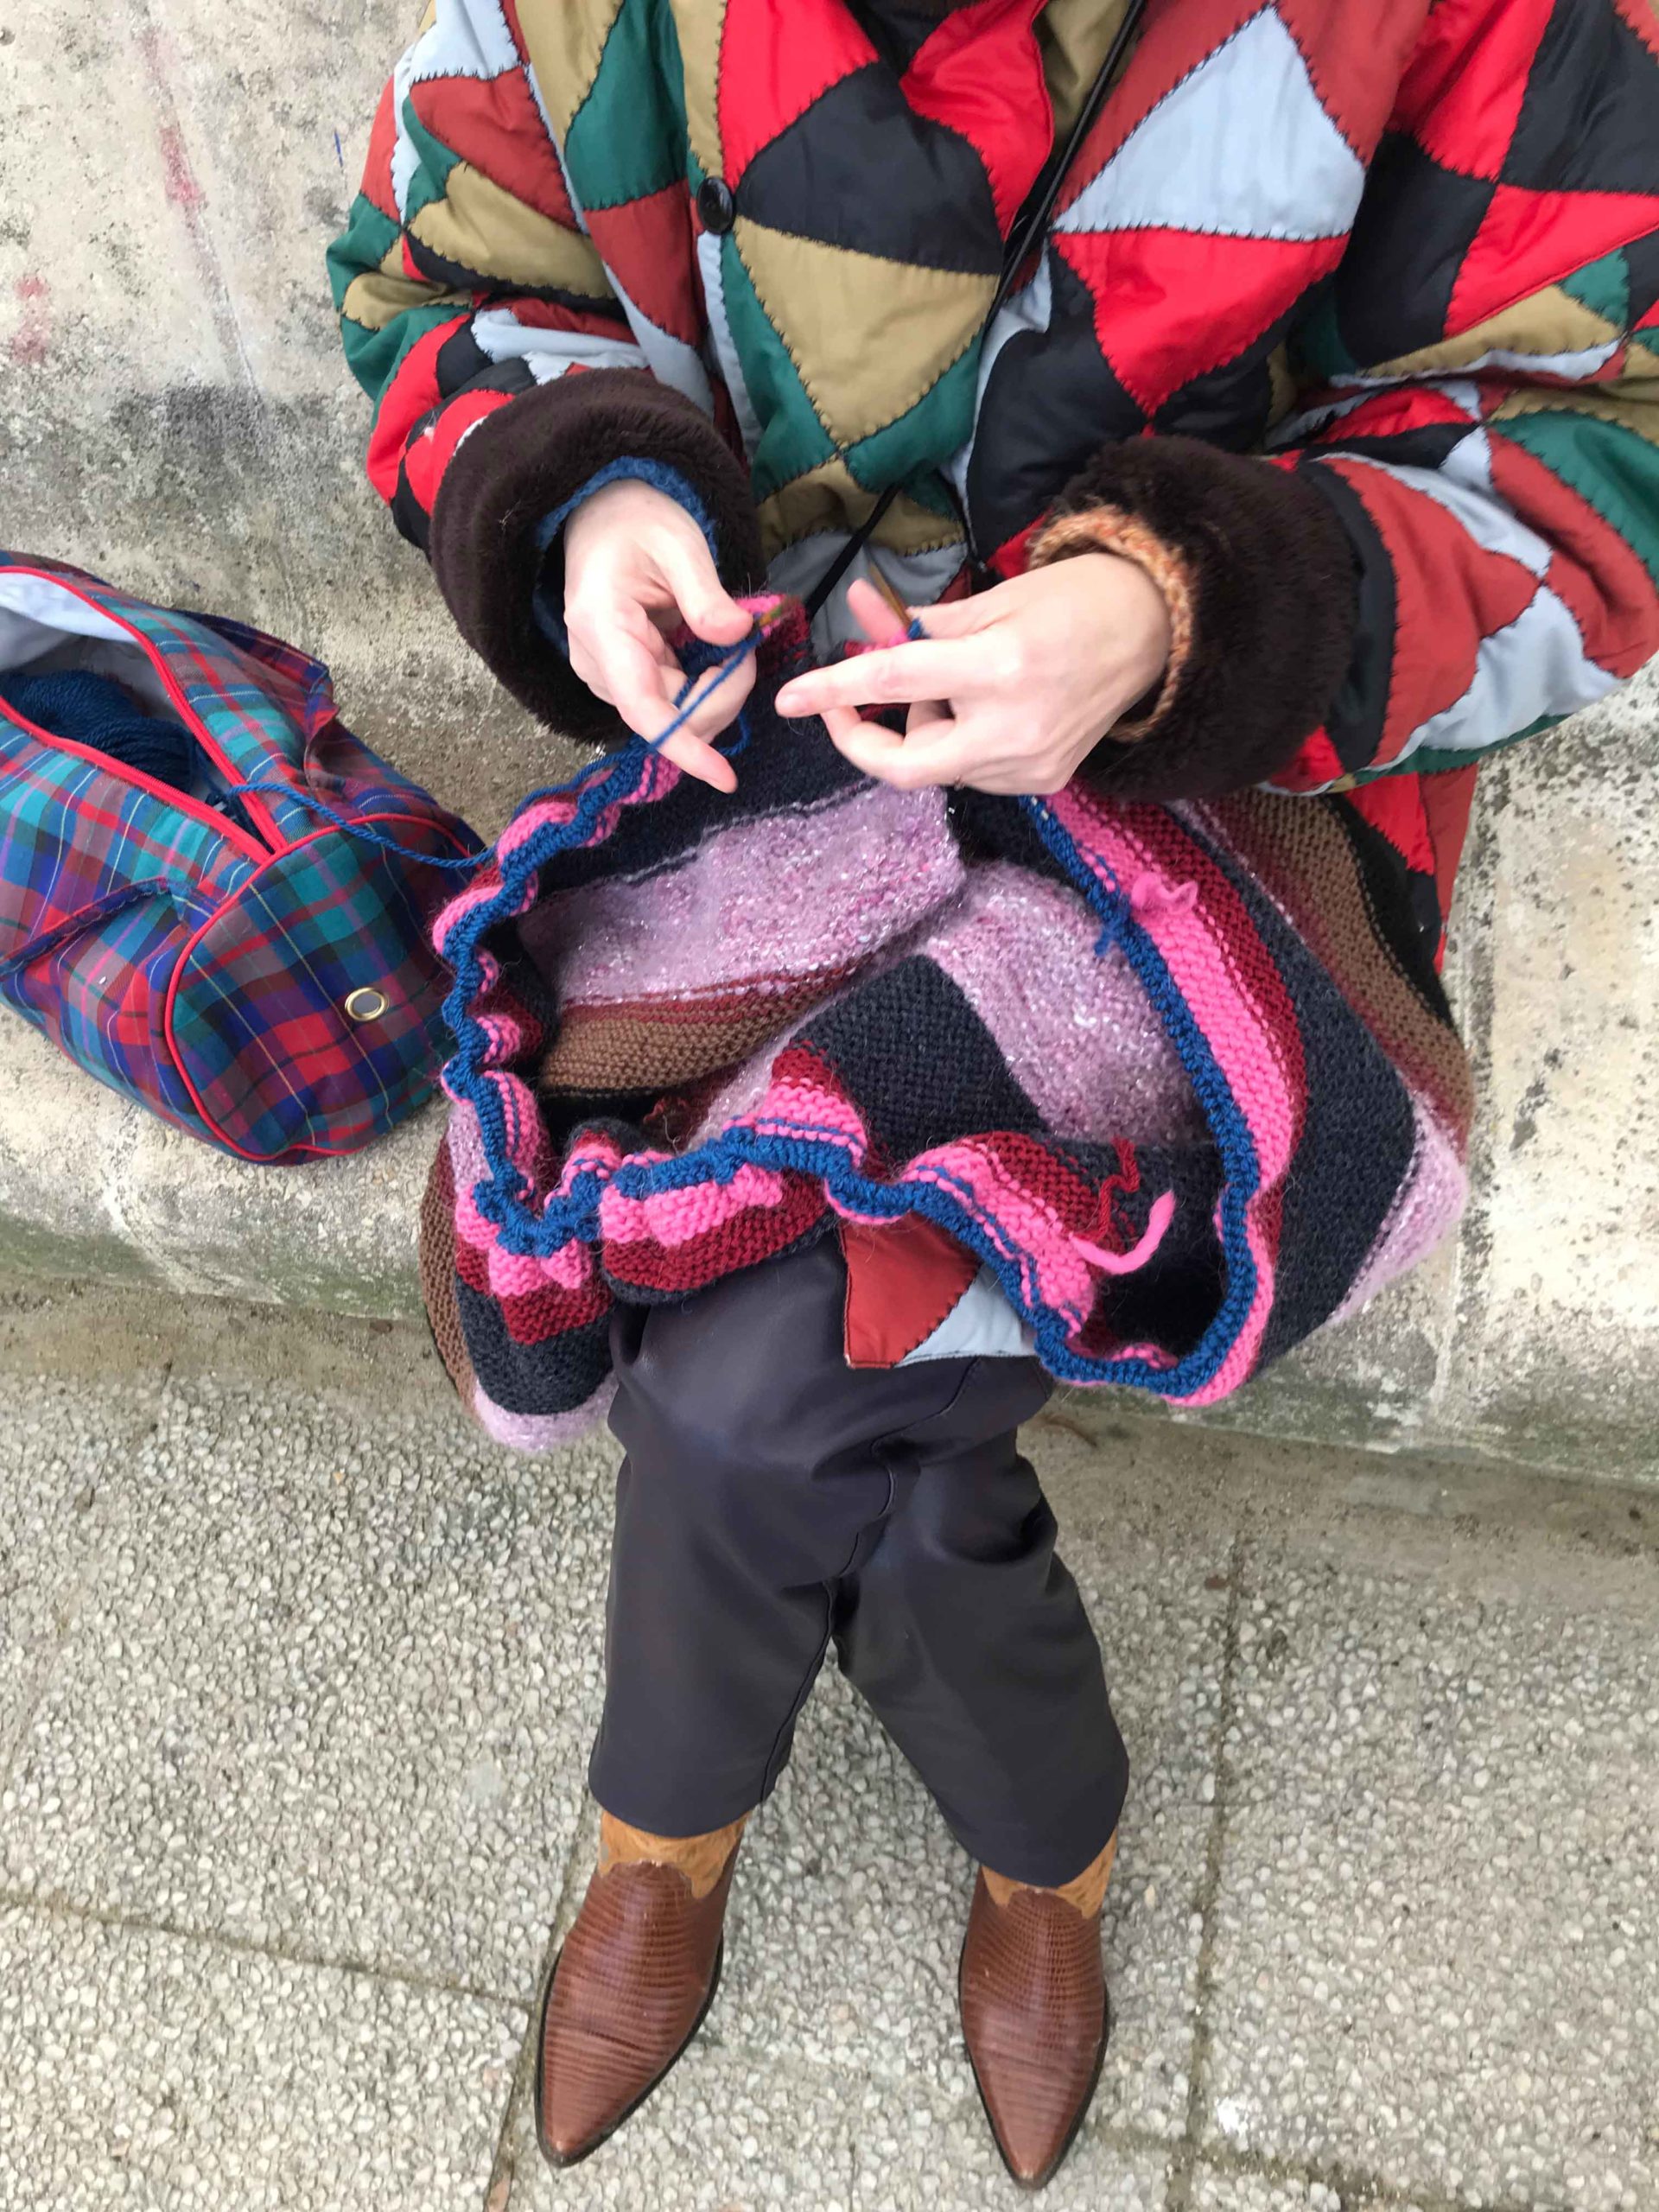 Aude le Maout, fondatrice de toison, en train de tricoter une couverture faite de pelotes de laines vintages. Artisanat Paris